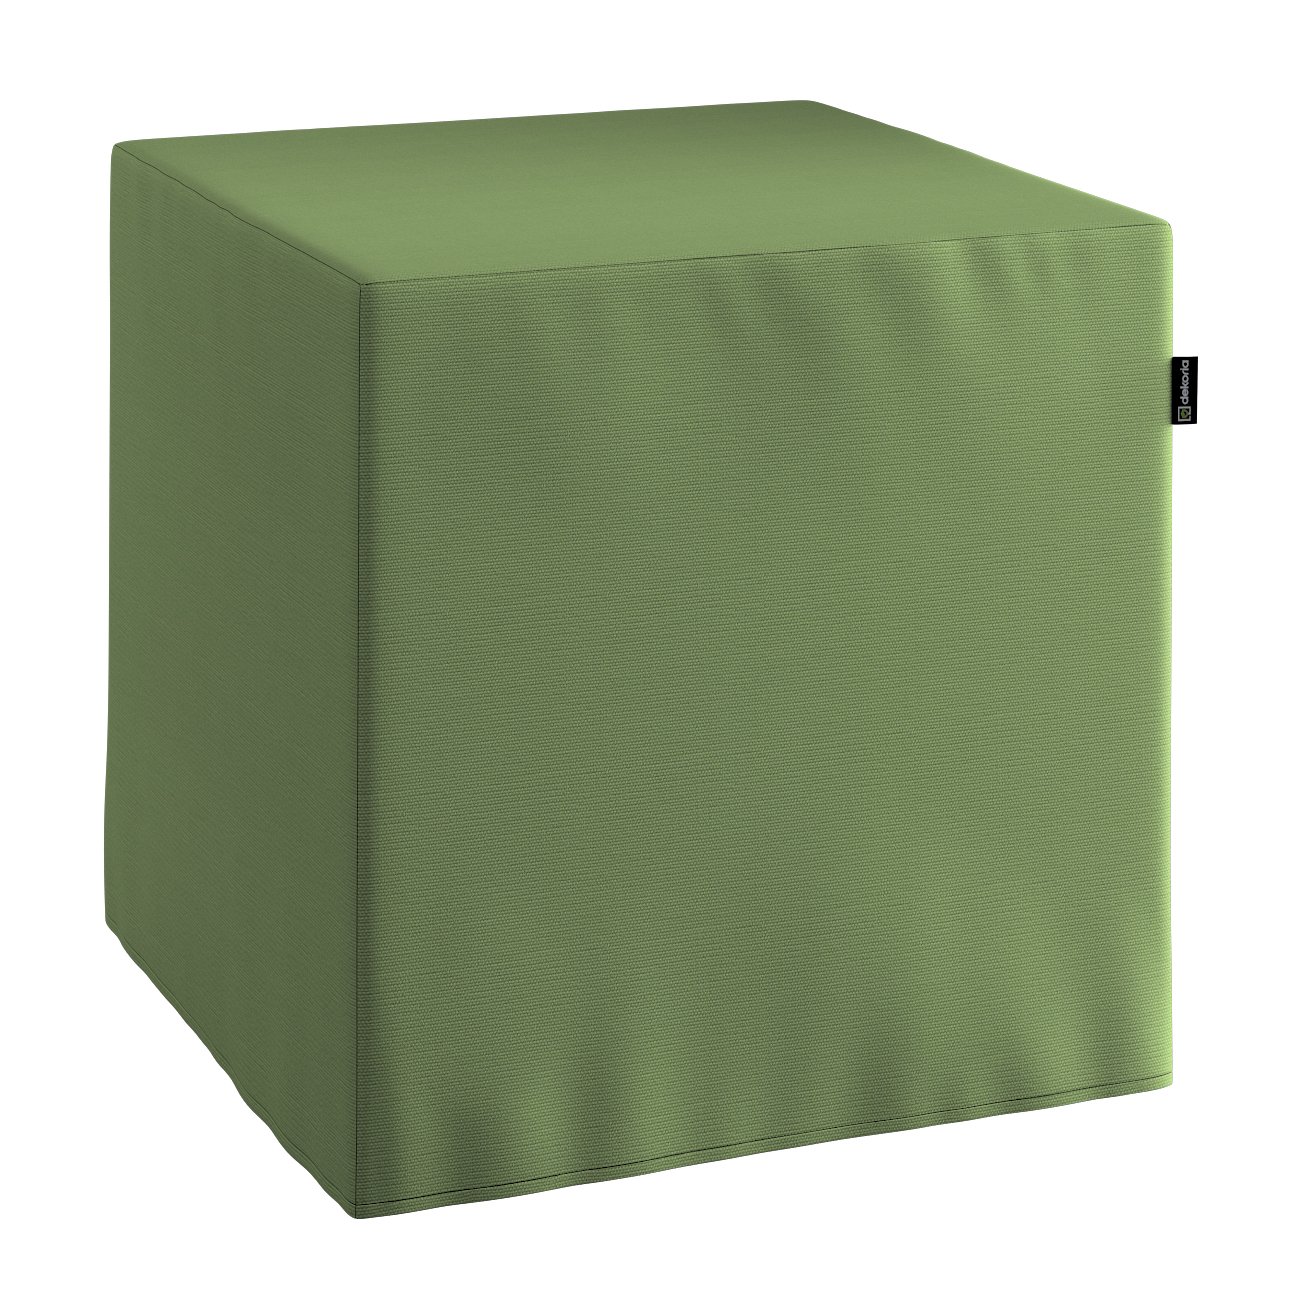 Dekoria Taburetka tvrdá, kocka, zelená, 40 x 40 x 40 cm, Cotton Panama, 702-06